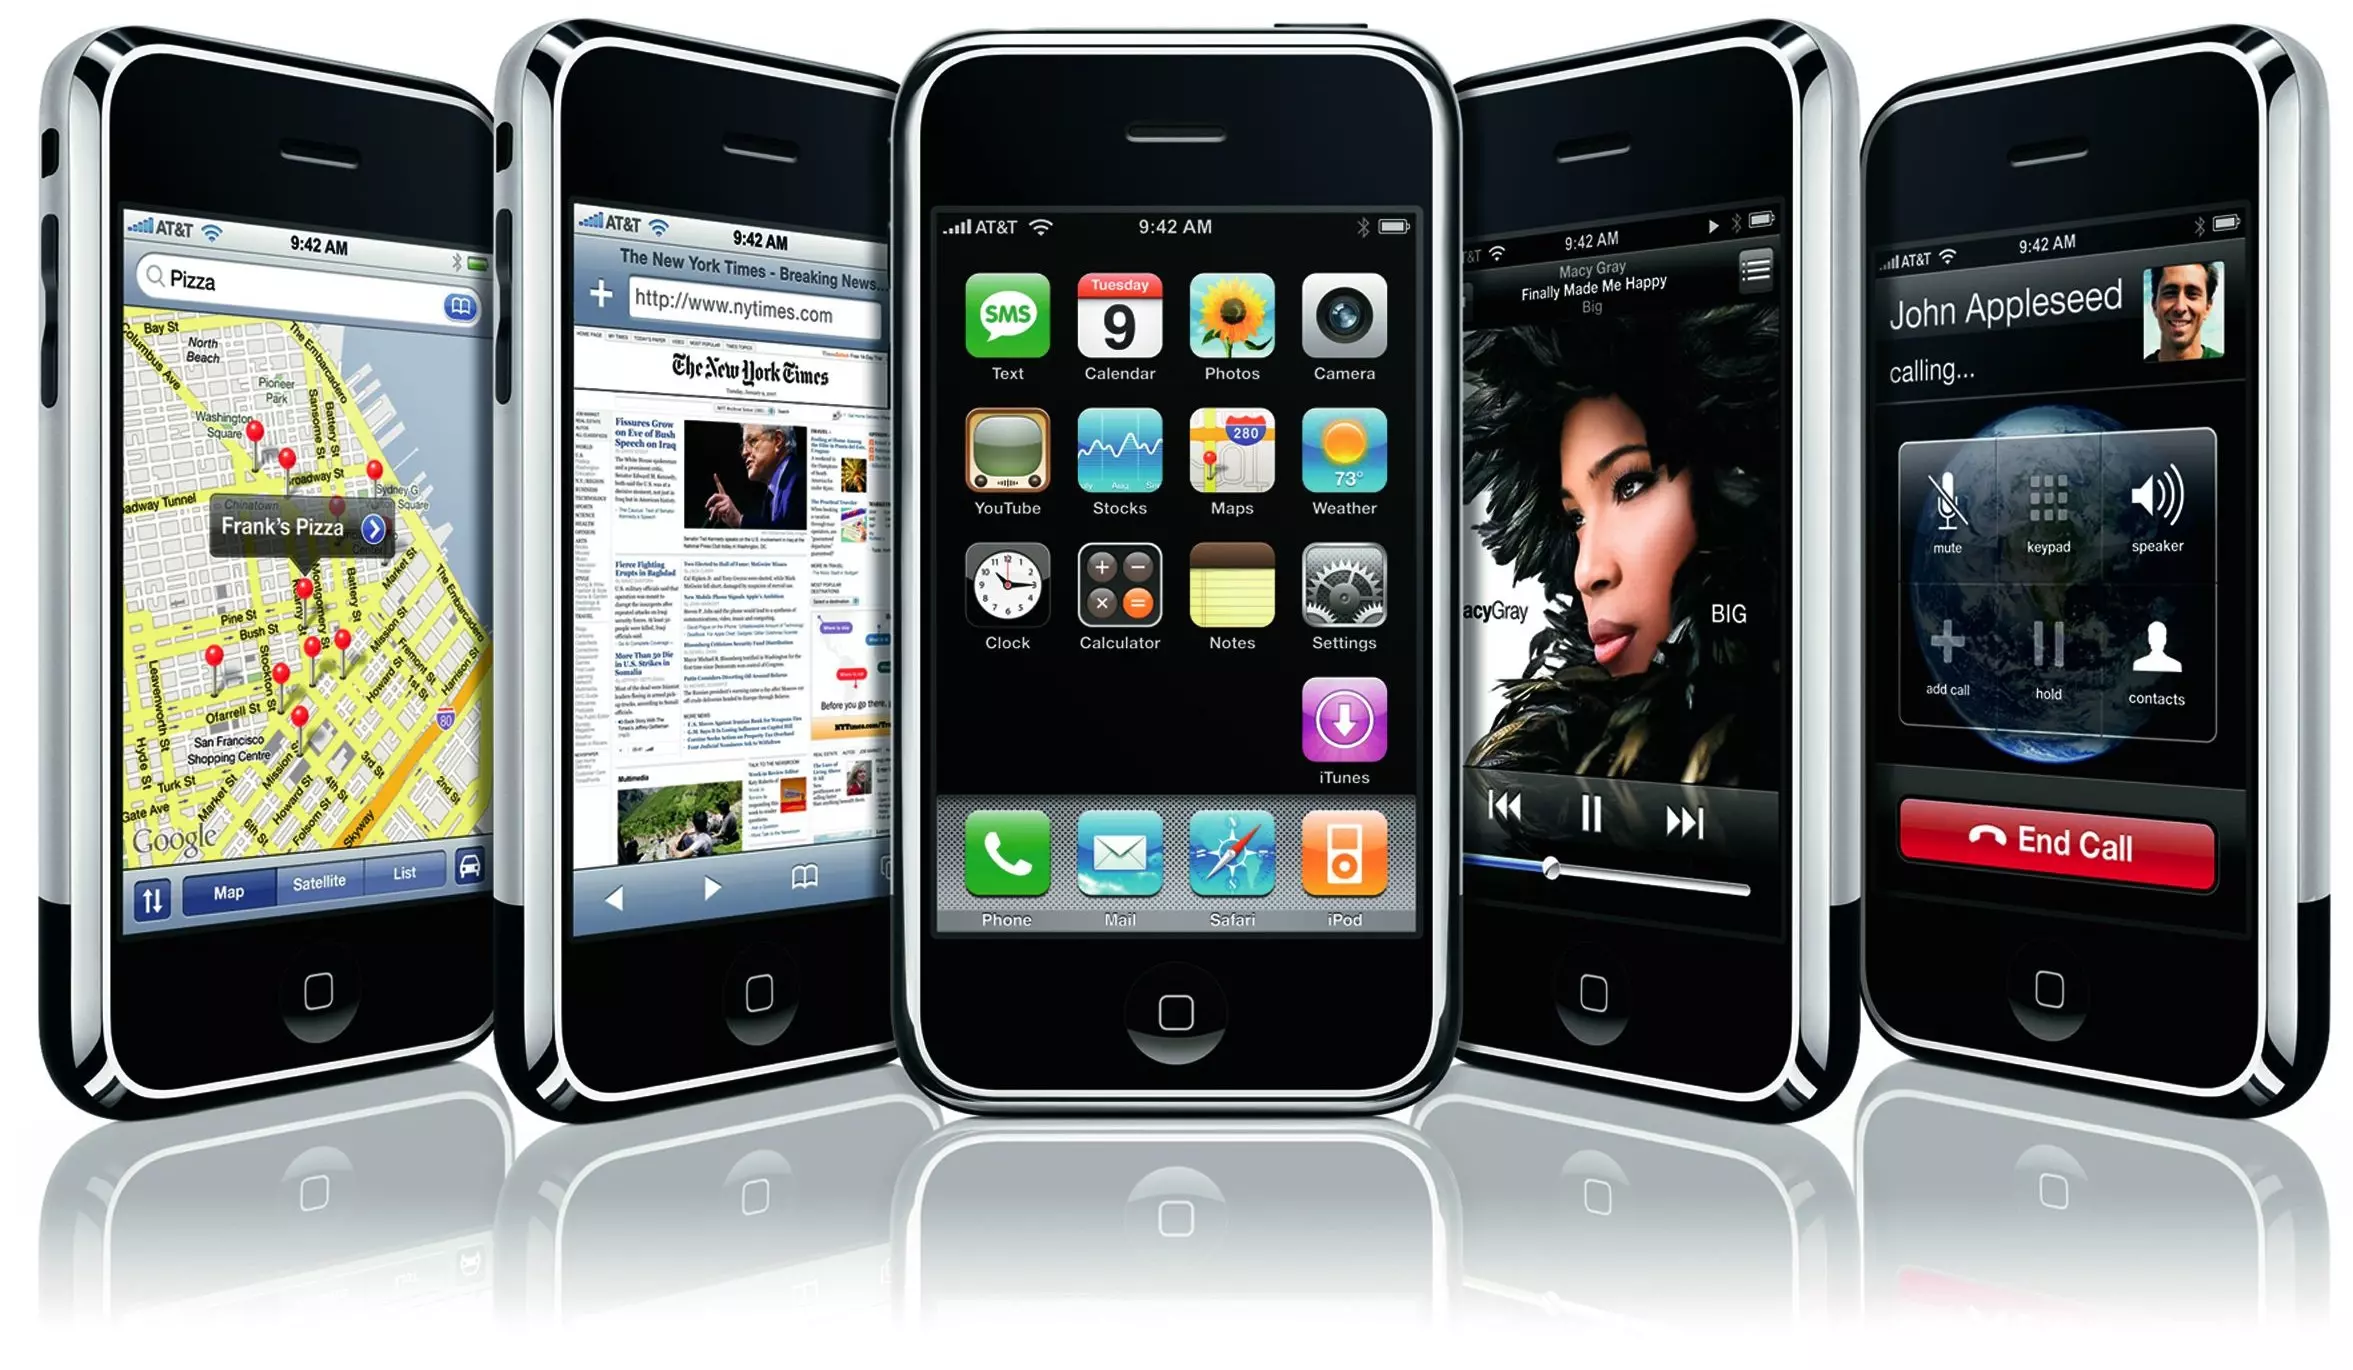 Hora iOS 17: novedades y modelos de iPhone compatibles con el nuevo sistema  operativo de Apple